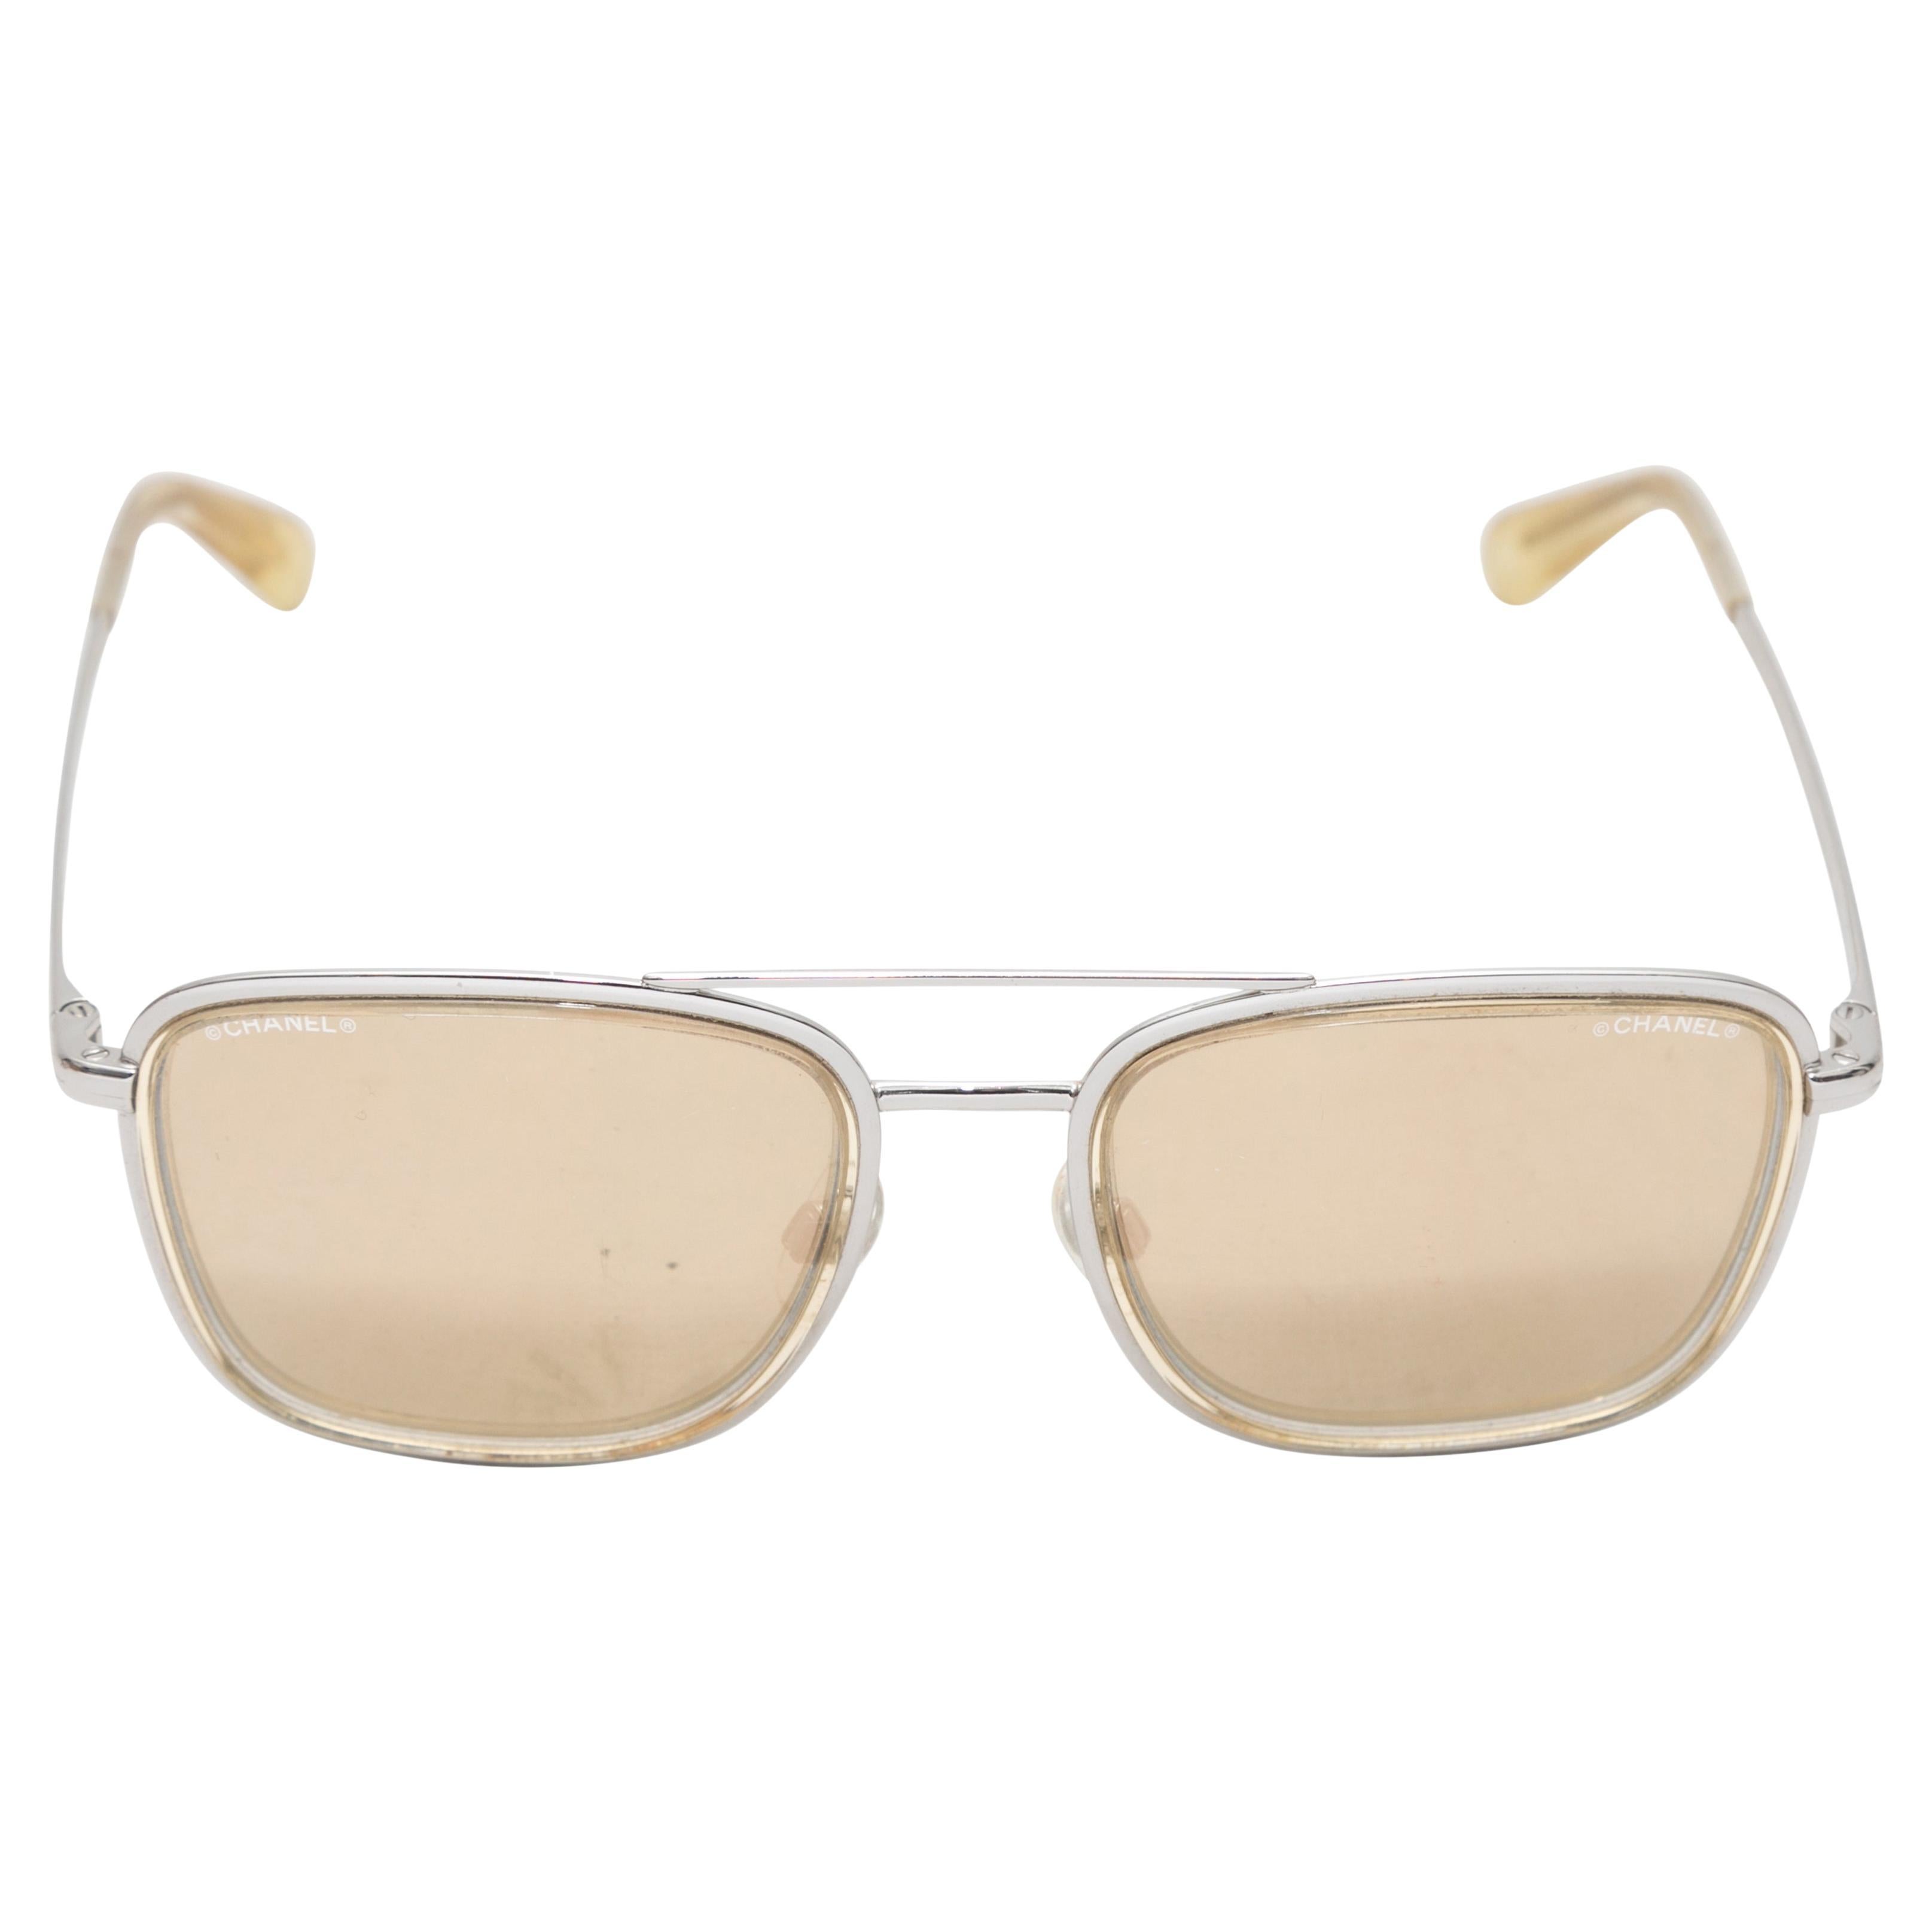 Silver-Tone Chanel Aviator Sunglasses For Sale